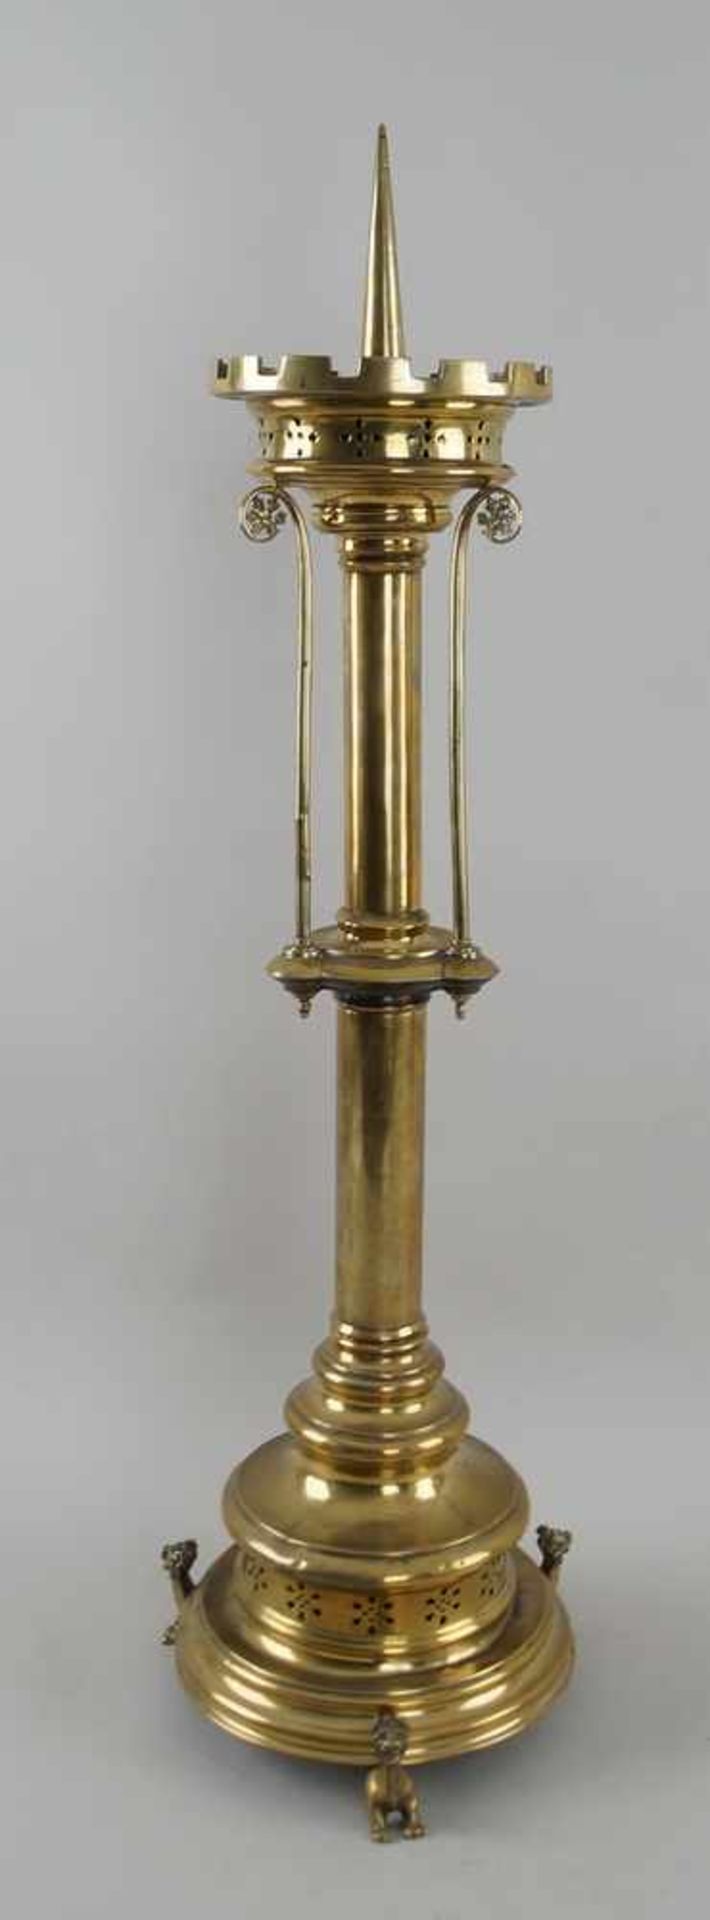 Imposanter neugotischer Leuchter, Messing, 19. JH, H 84 cm- - -24.00 % buyer's premium on the hammer - Bild 3 aus 6